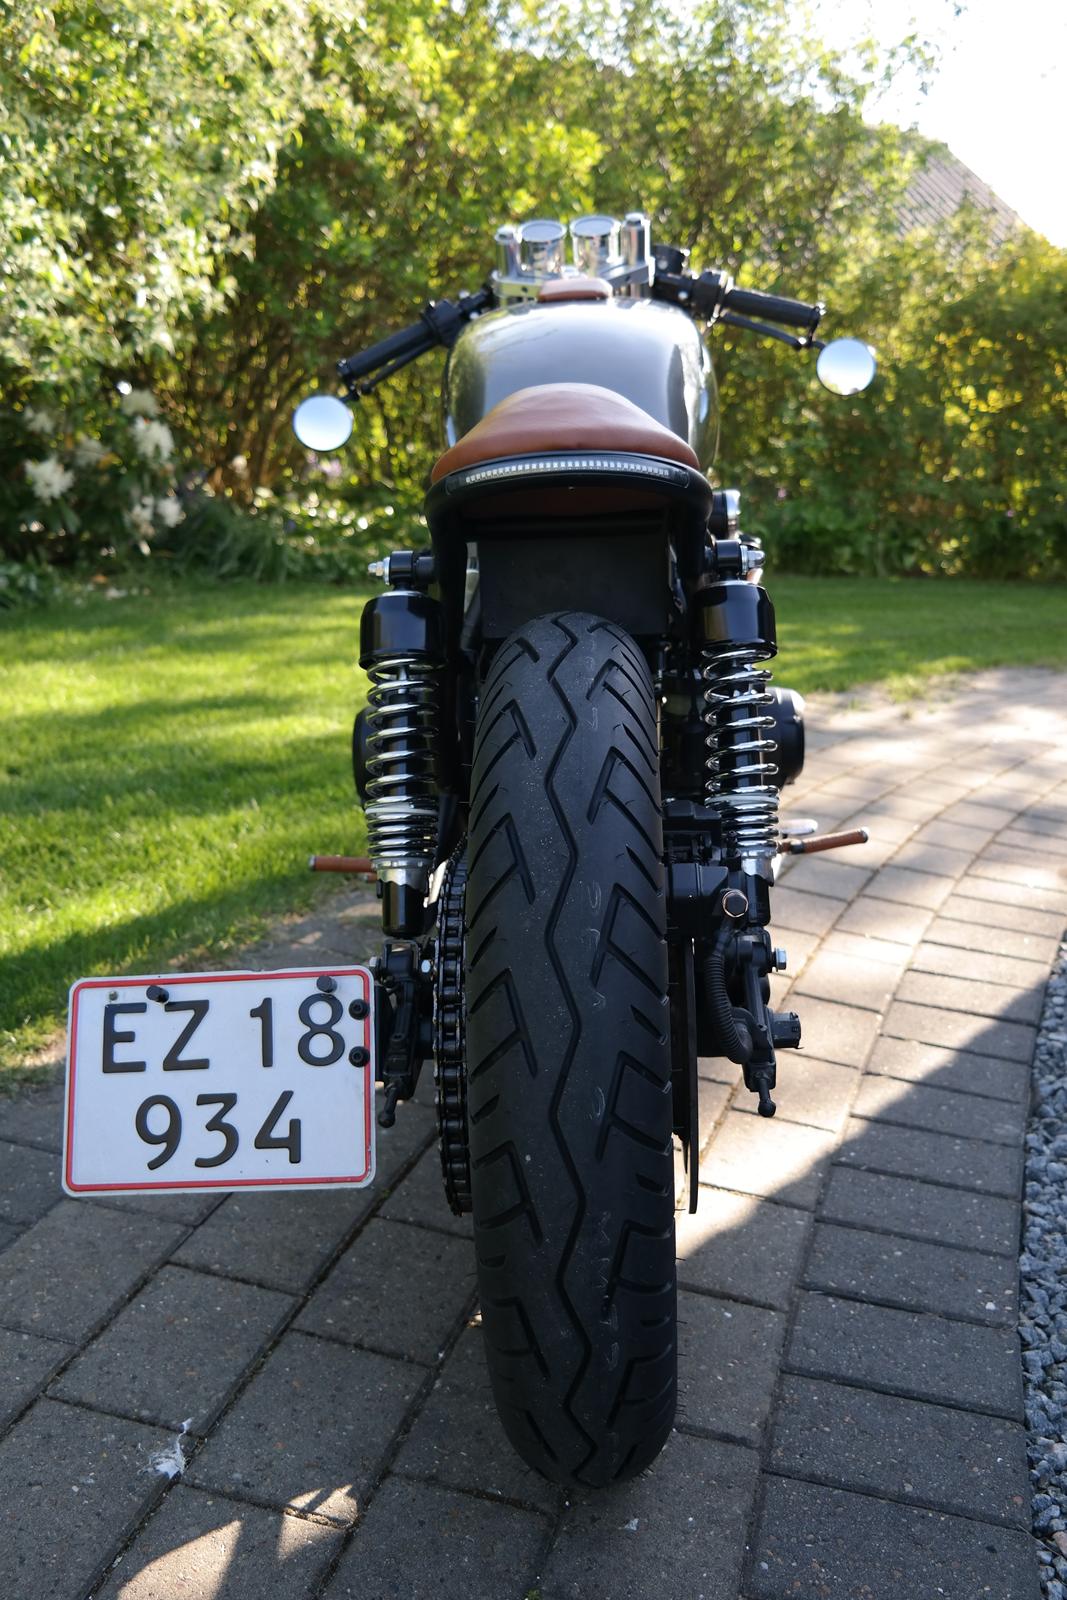 Suzuki GS750 billede 6